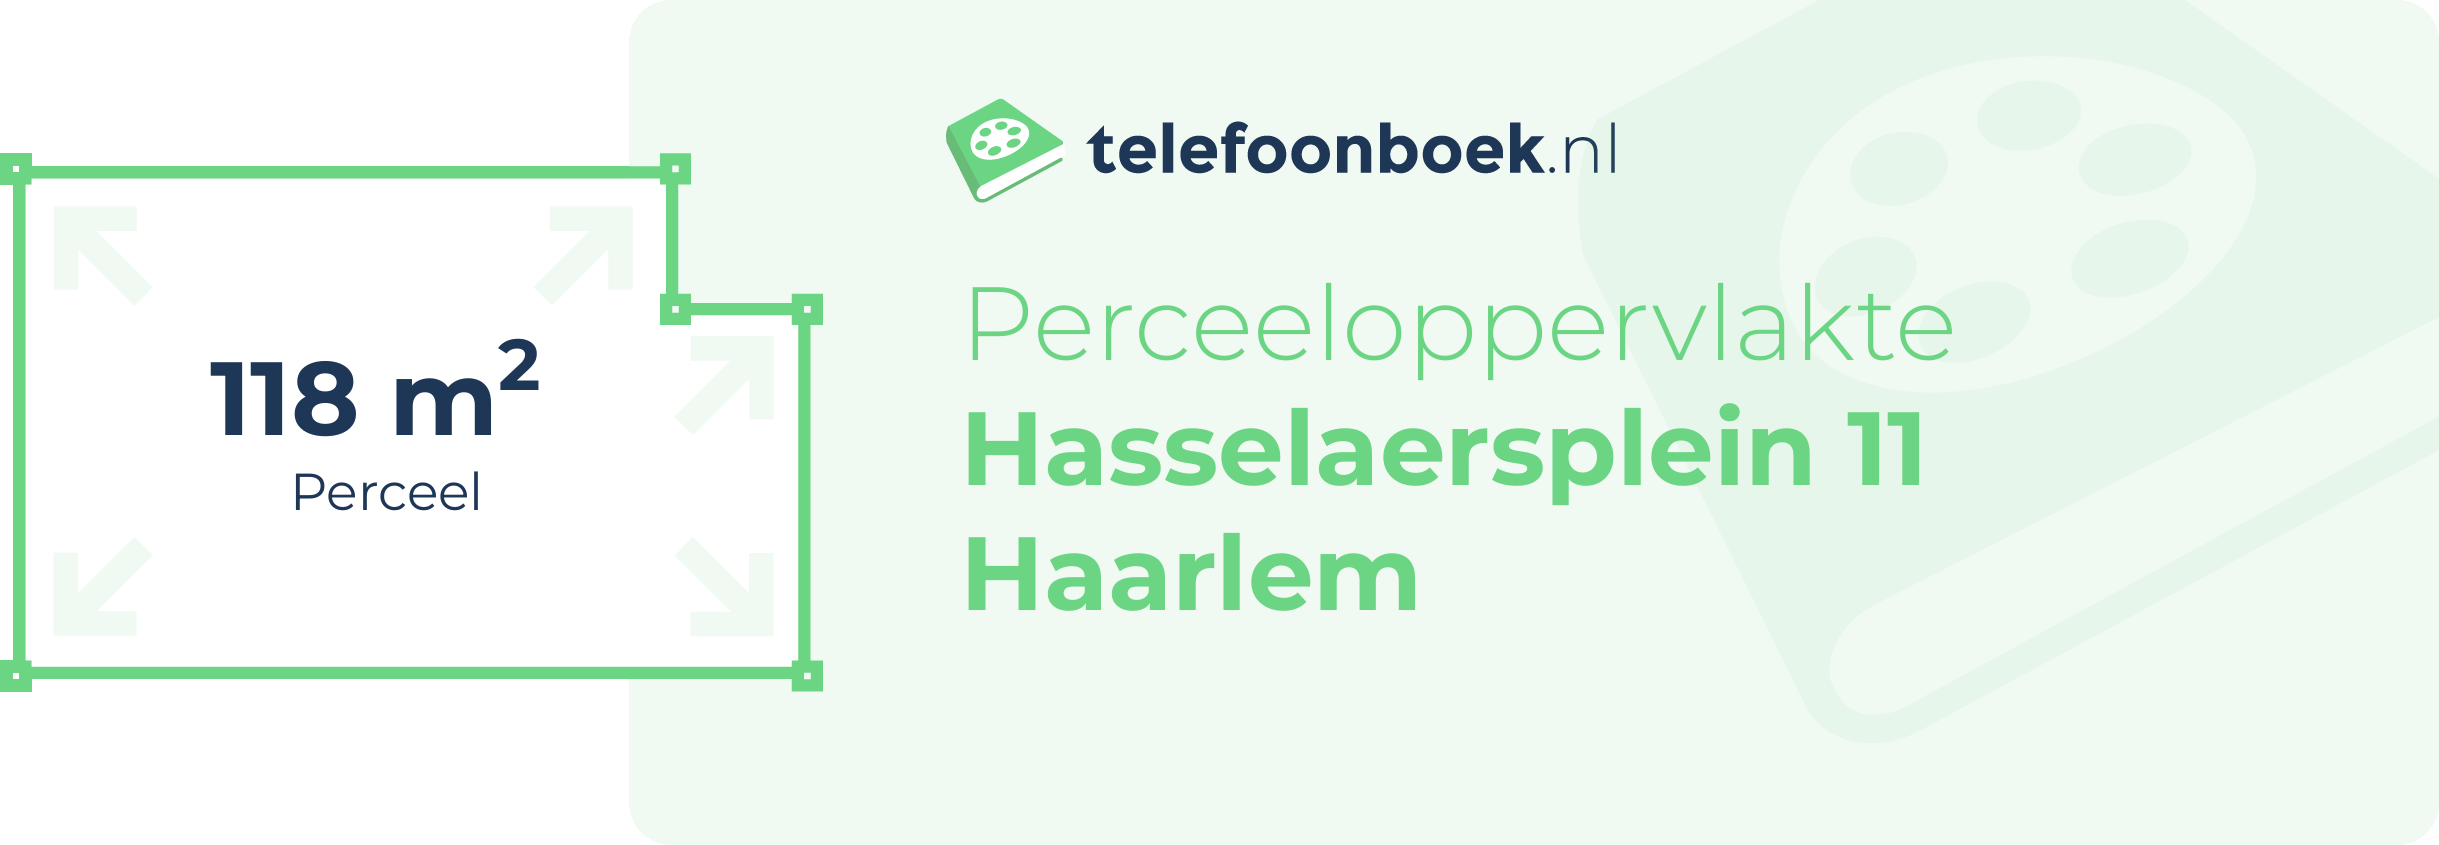 Perceeloppervlakte Hasselaersplein 11 Haarlem